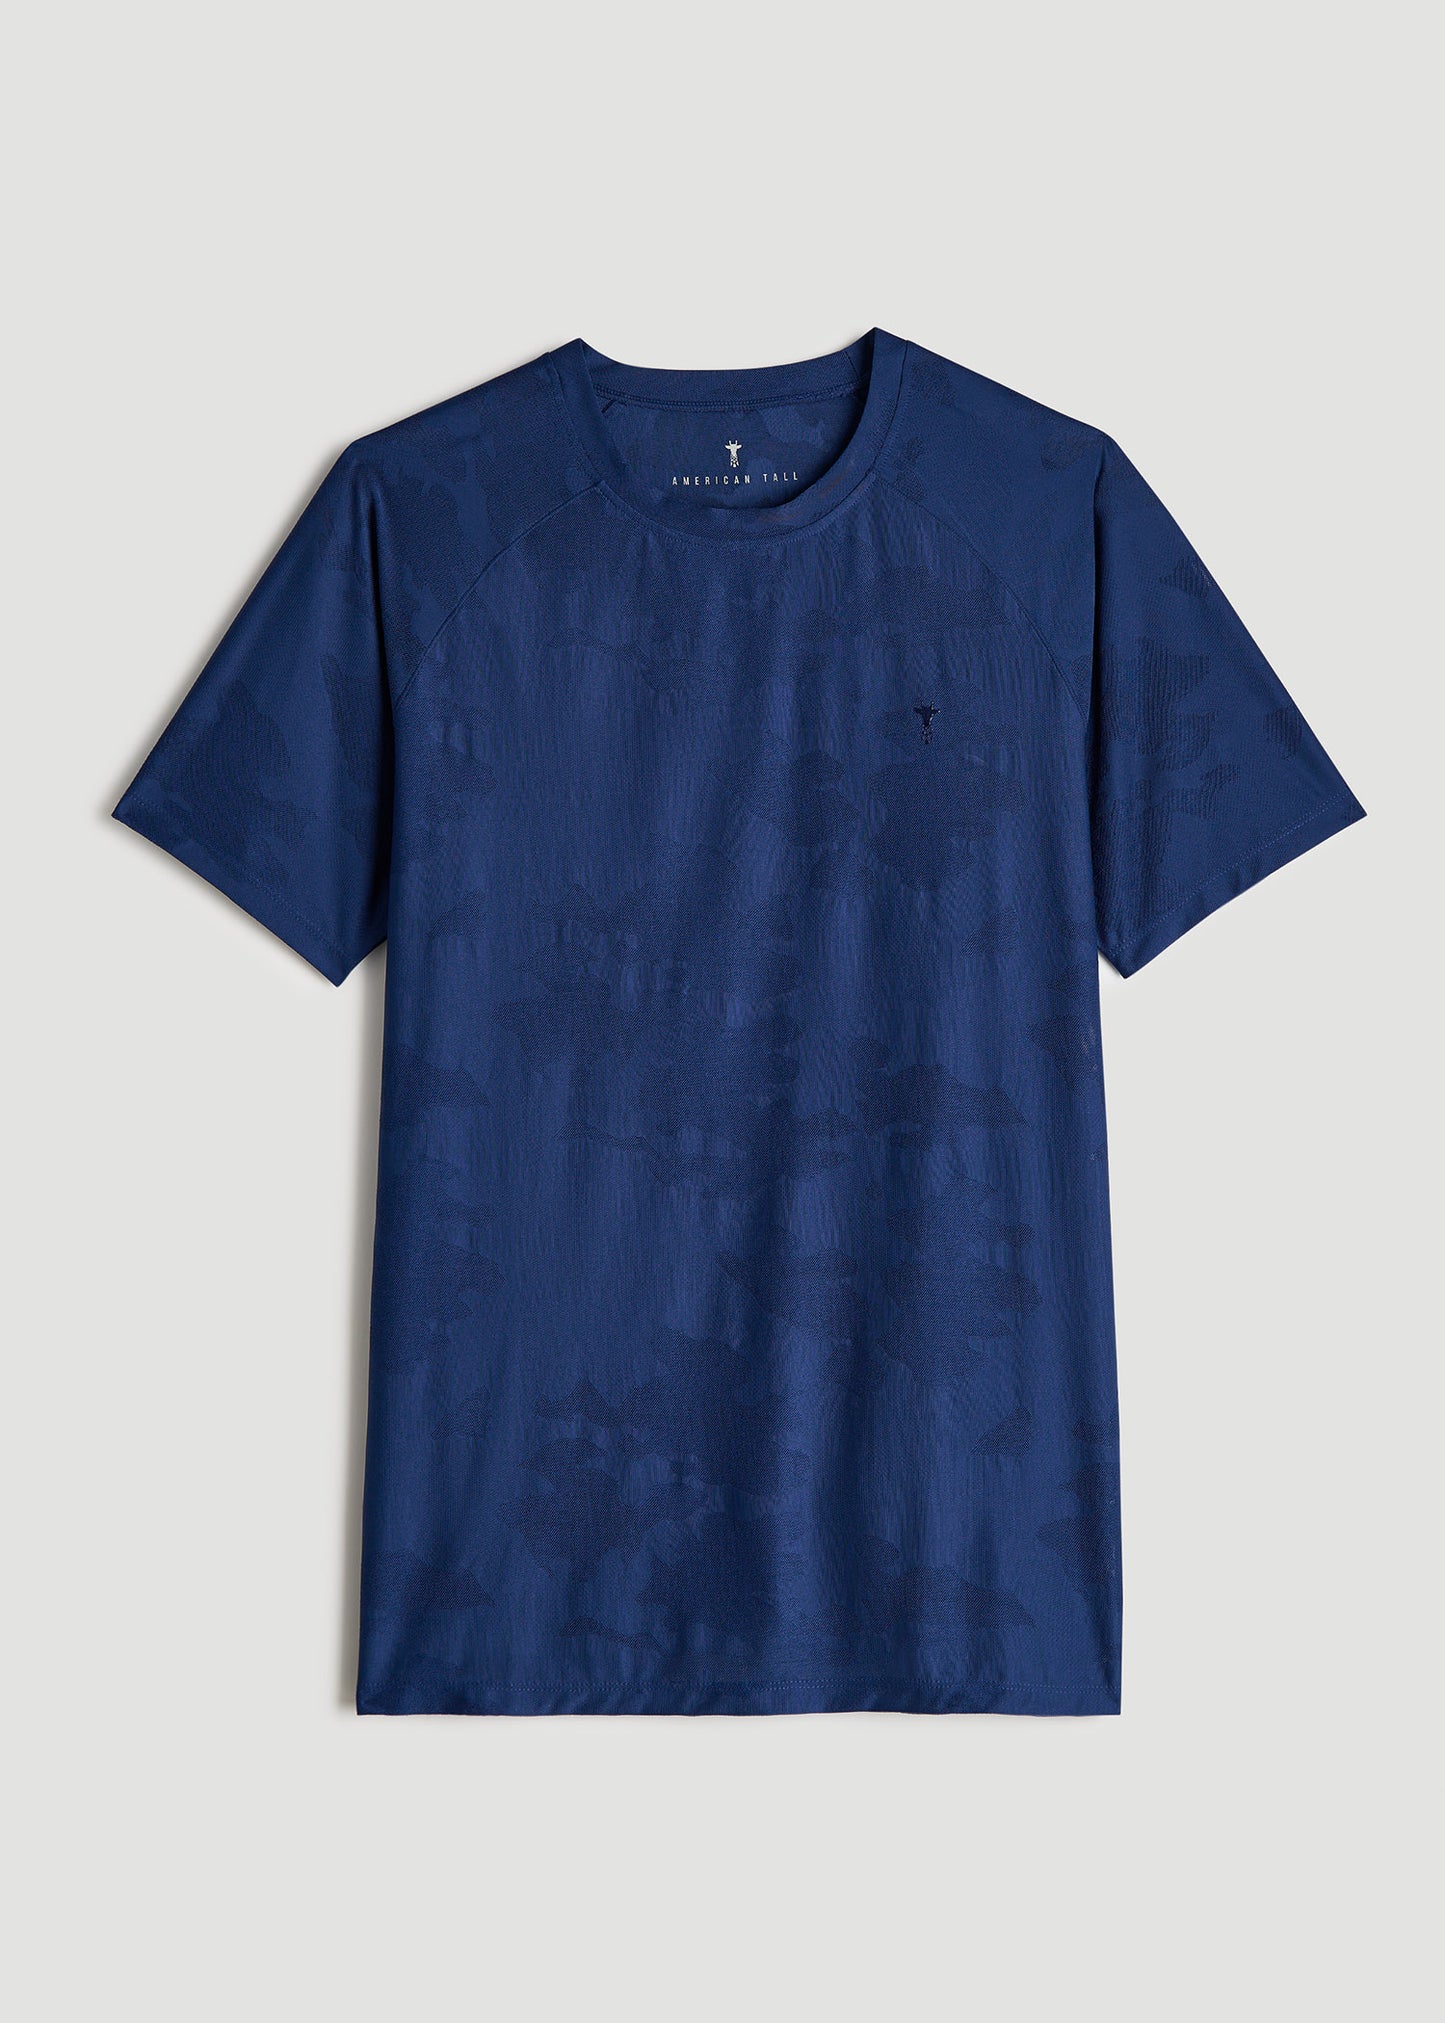 Raglan Training T-Shirt for Tall Men in Midnight Blue